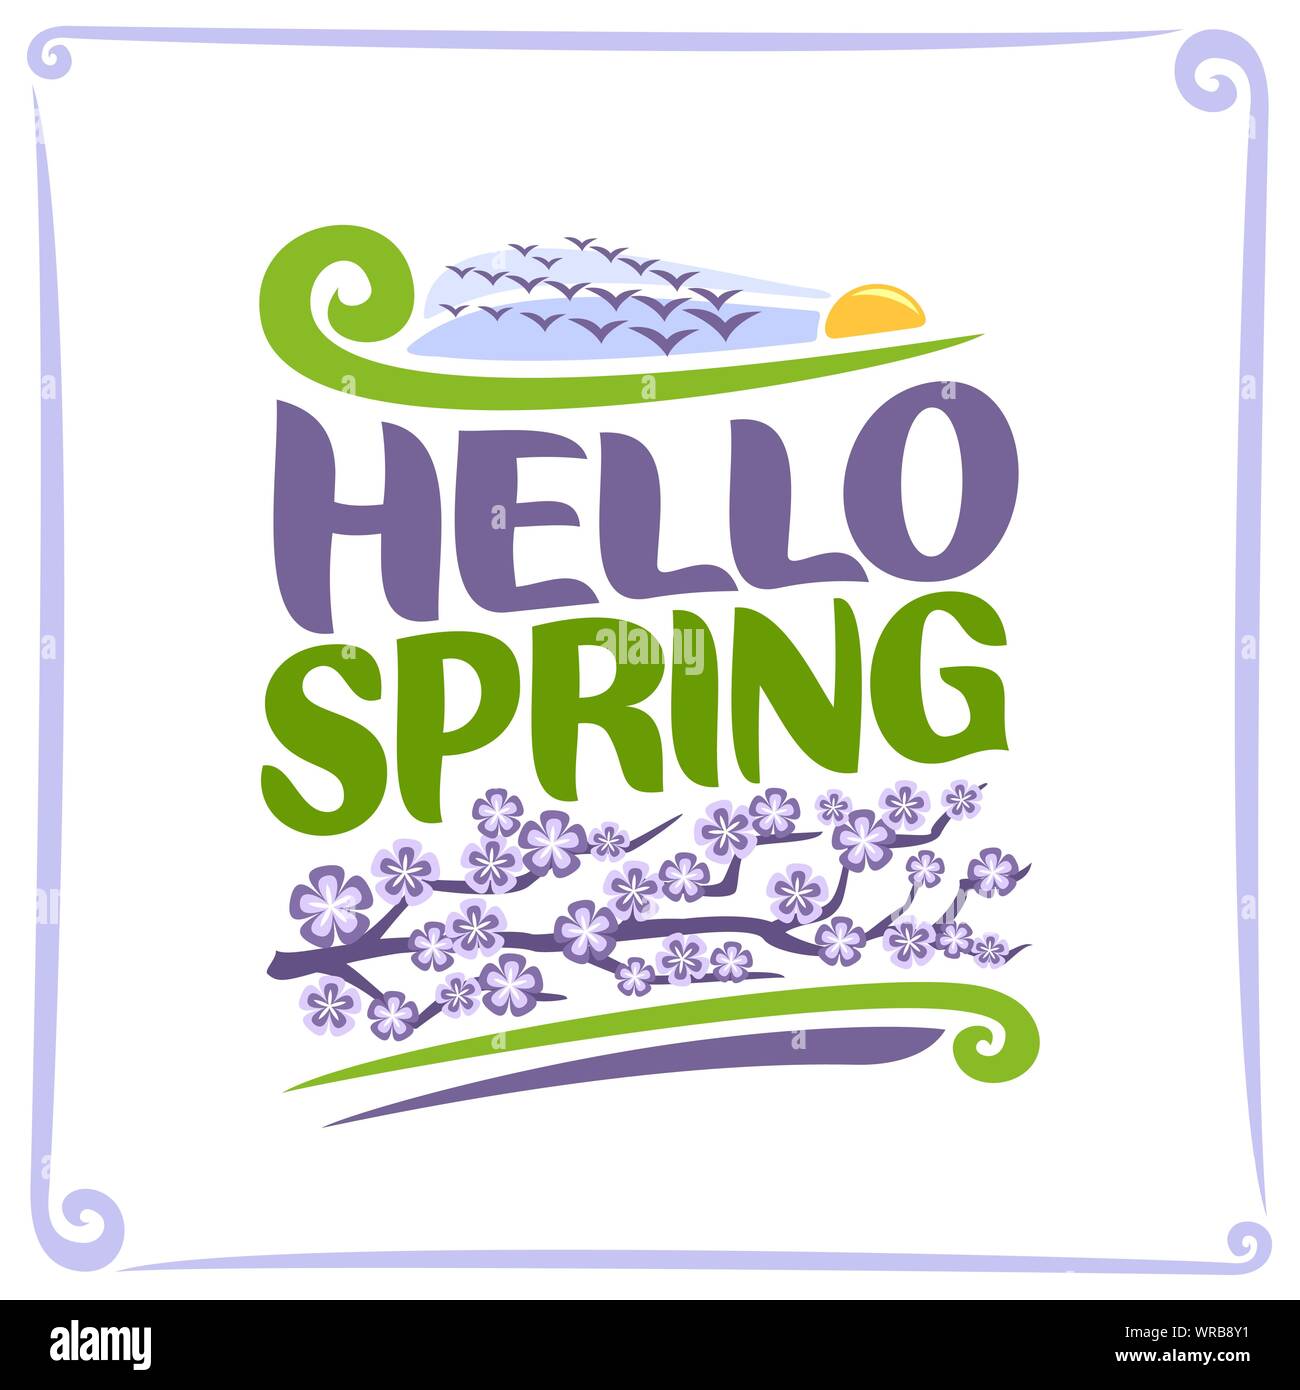 Poster del vettore per la primavera: stormo di uccelli che vola nel cielo di sunrise, verde il testo del titolo - Ciao a molla, ramo di albero con lilla fiori cartoon su bianco ba Illustrazione Vettoriale